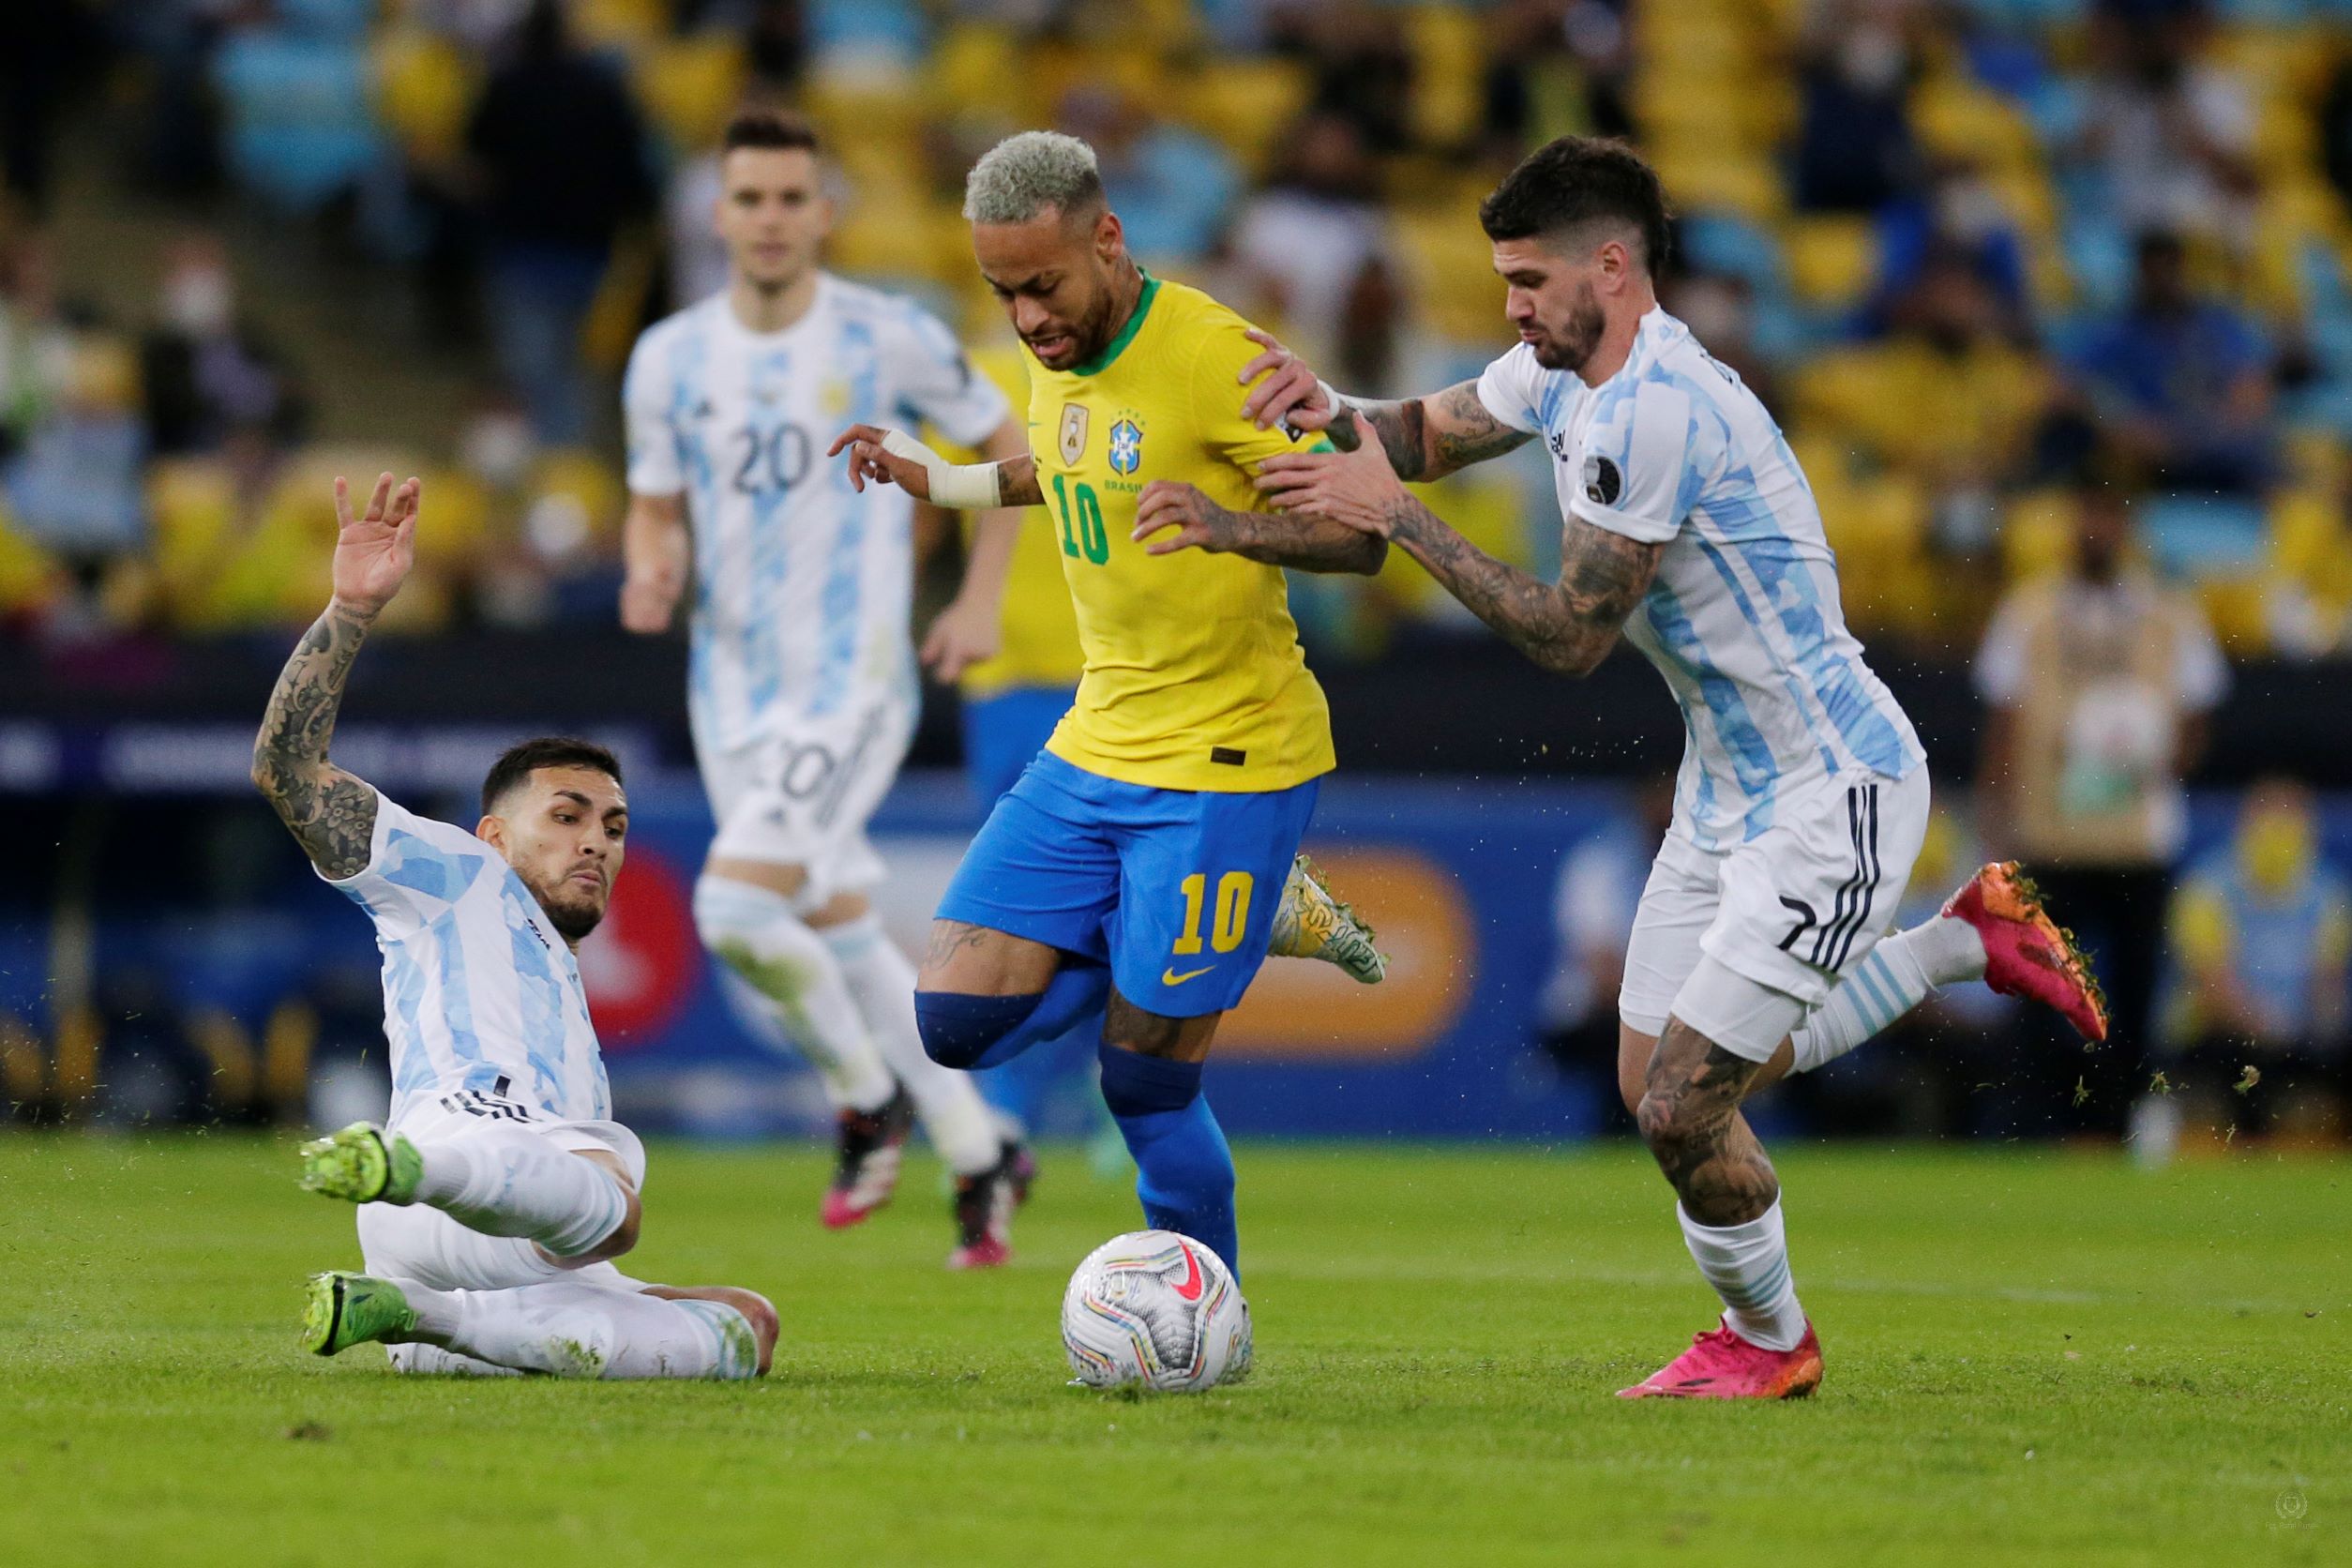 Neymar w reprezentacji Brazylii podczas meczu z Argentyną - kupon SEO 10.11.